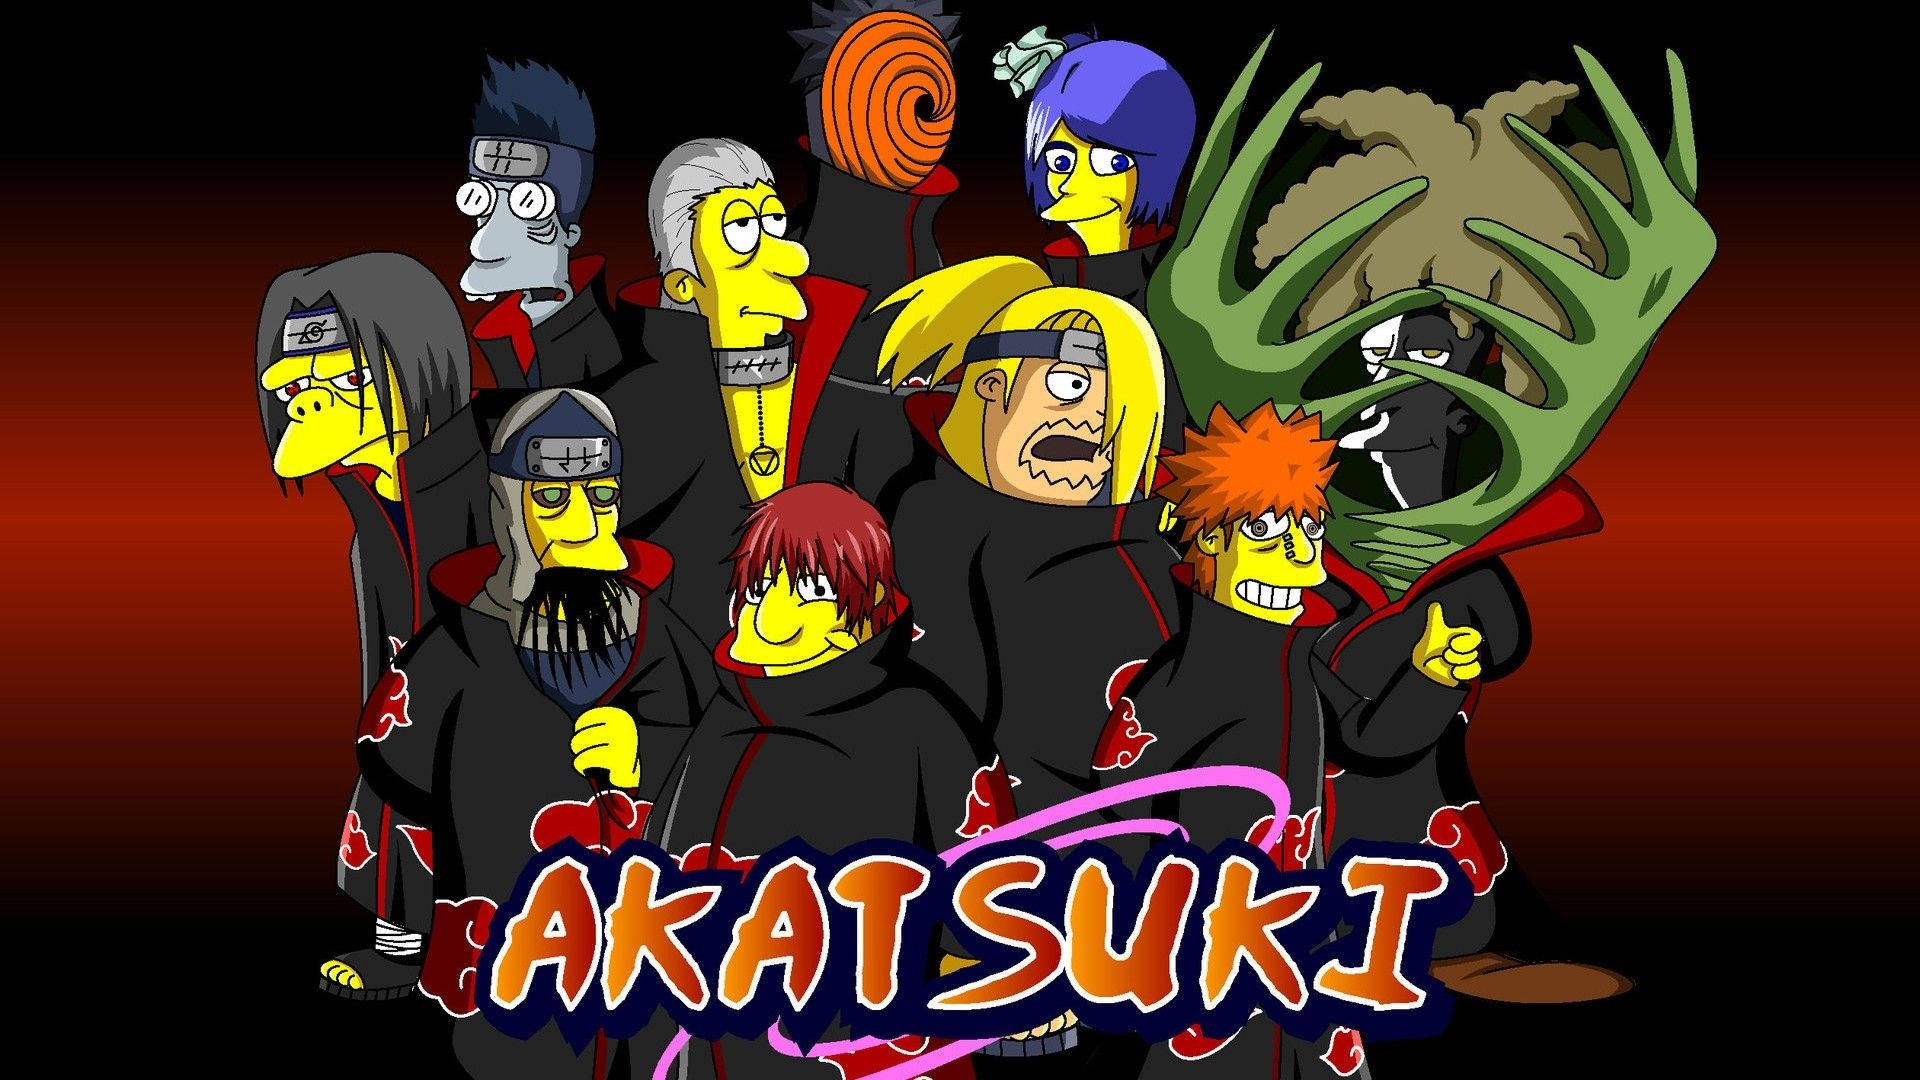 Akatsuki Group As Simpsons Characters